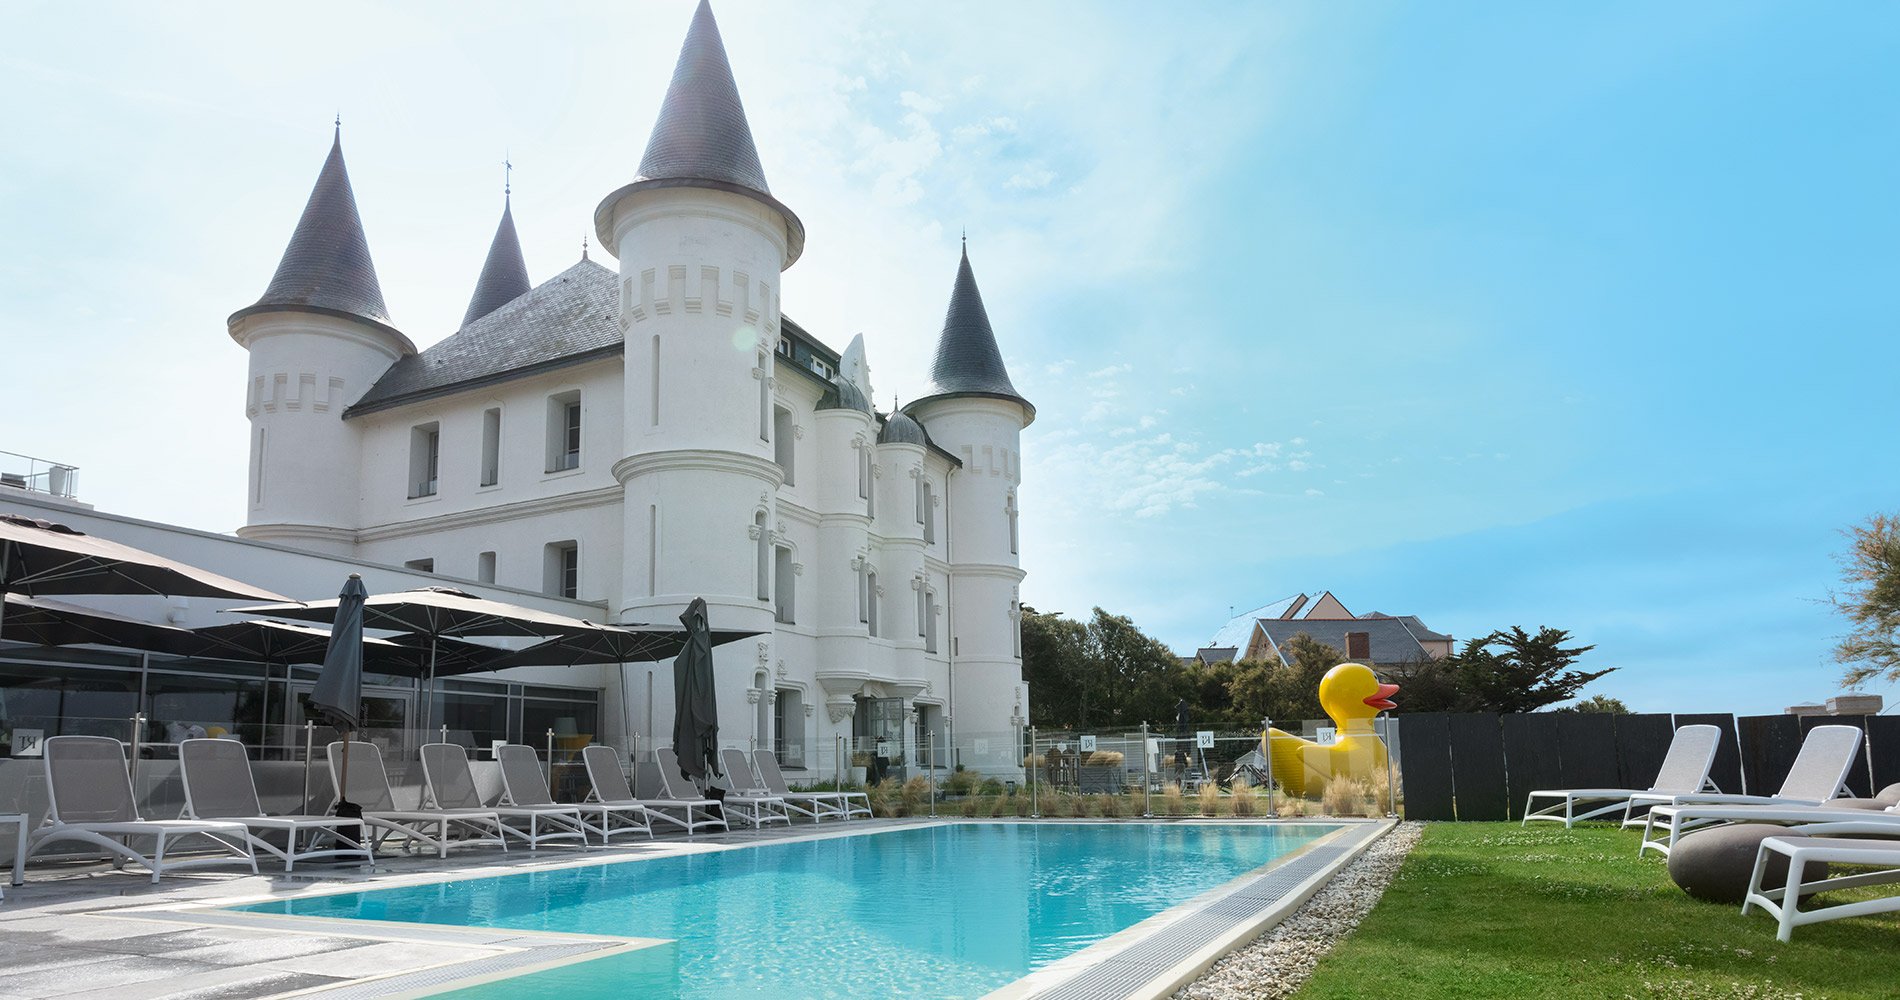 Hôtel de luxe Château des Tourelles Relais Thalasso Pornichet - Baie de la Baule 4 étoiles Thalasso Spa Baie de La Baule France piscine